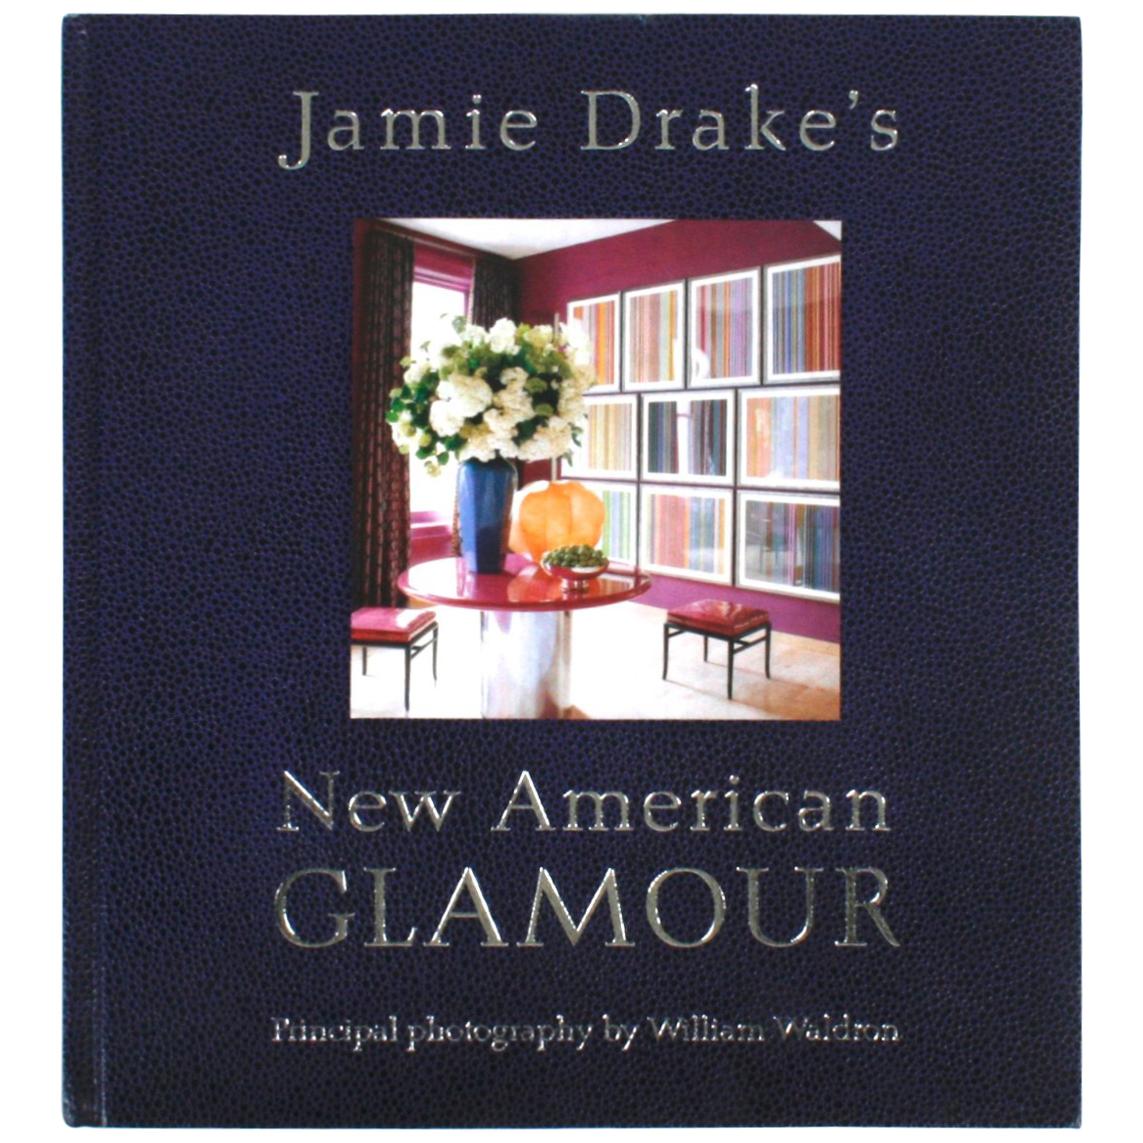 Le Nouveau Glamour Américain de Jamie Drake, première édition